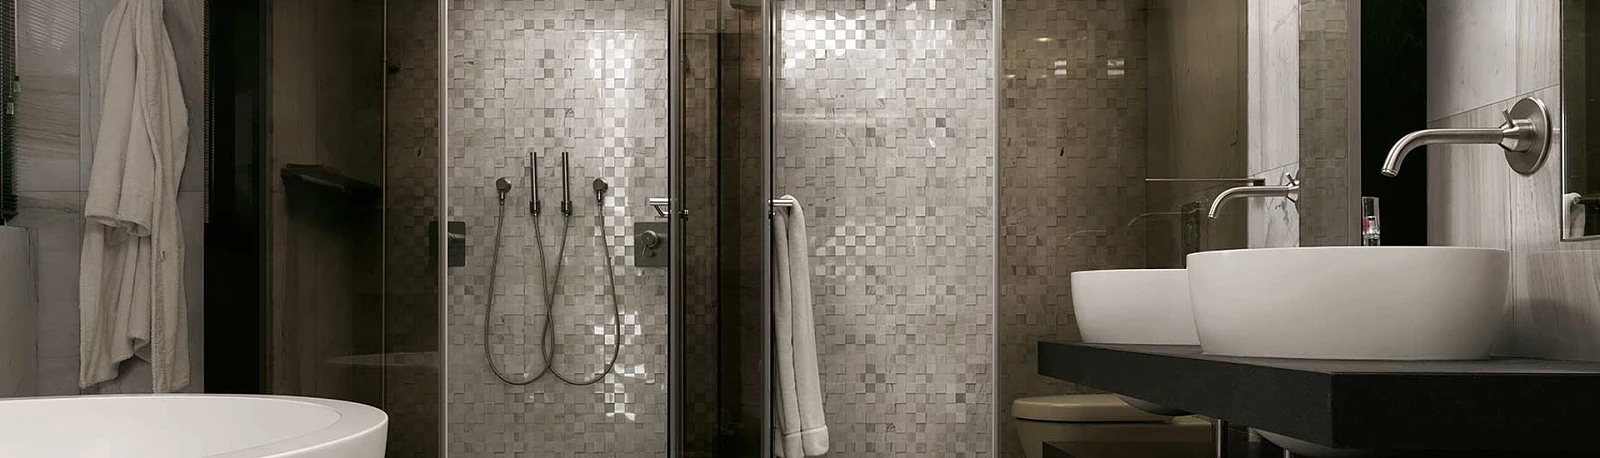 łaz_k.jpg  Kojący minimalizm – łazienka w piaskowym kolorze | Wyposażenie wnętrz MAXFLIZ